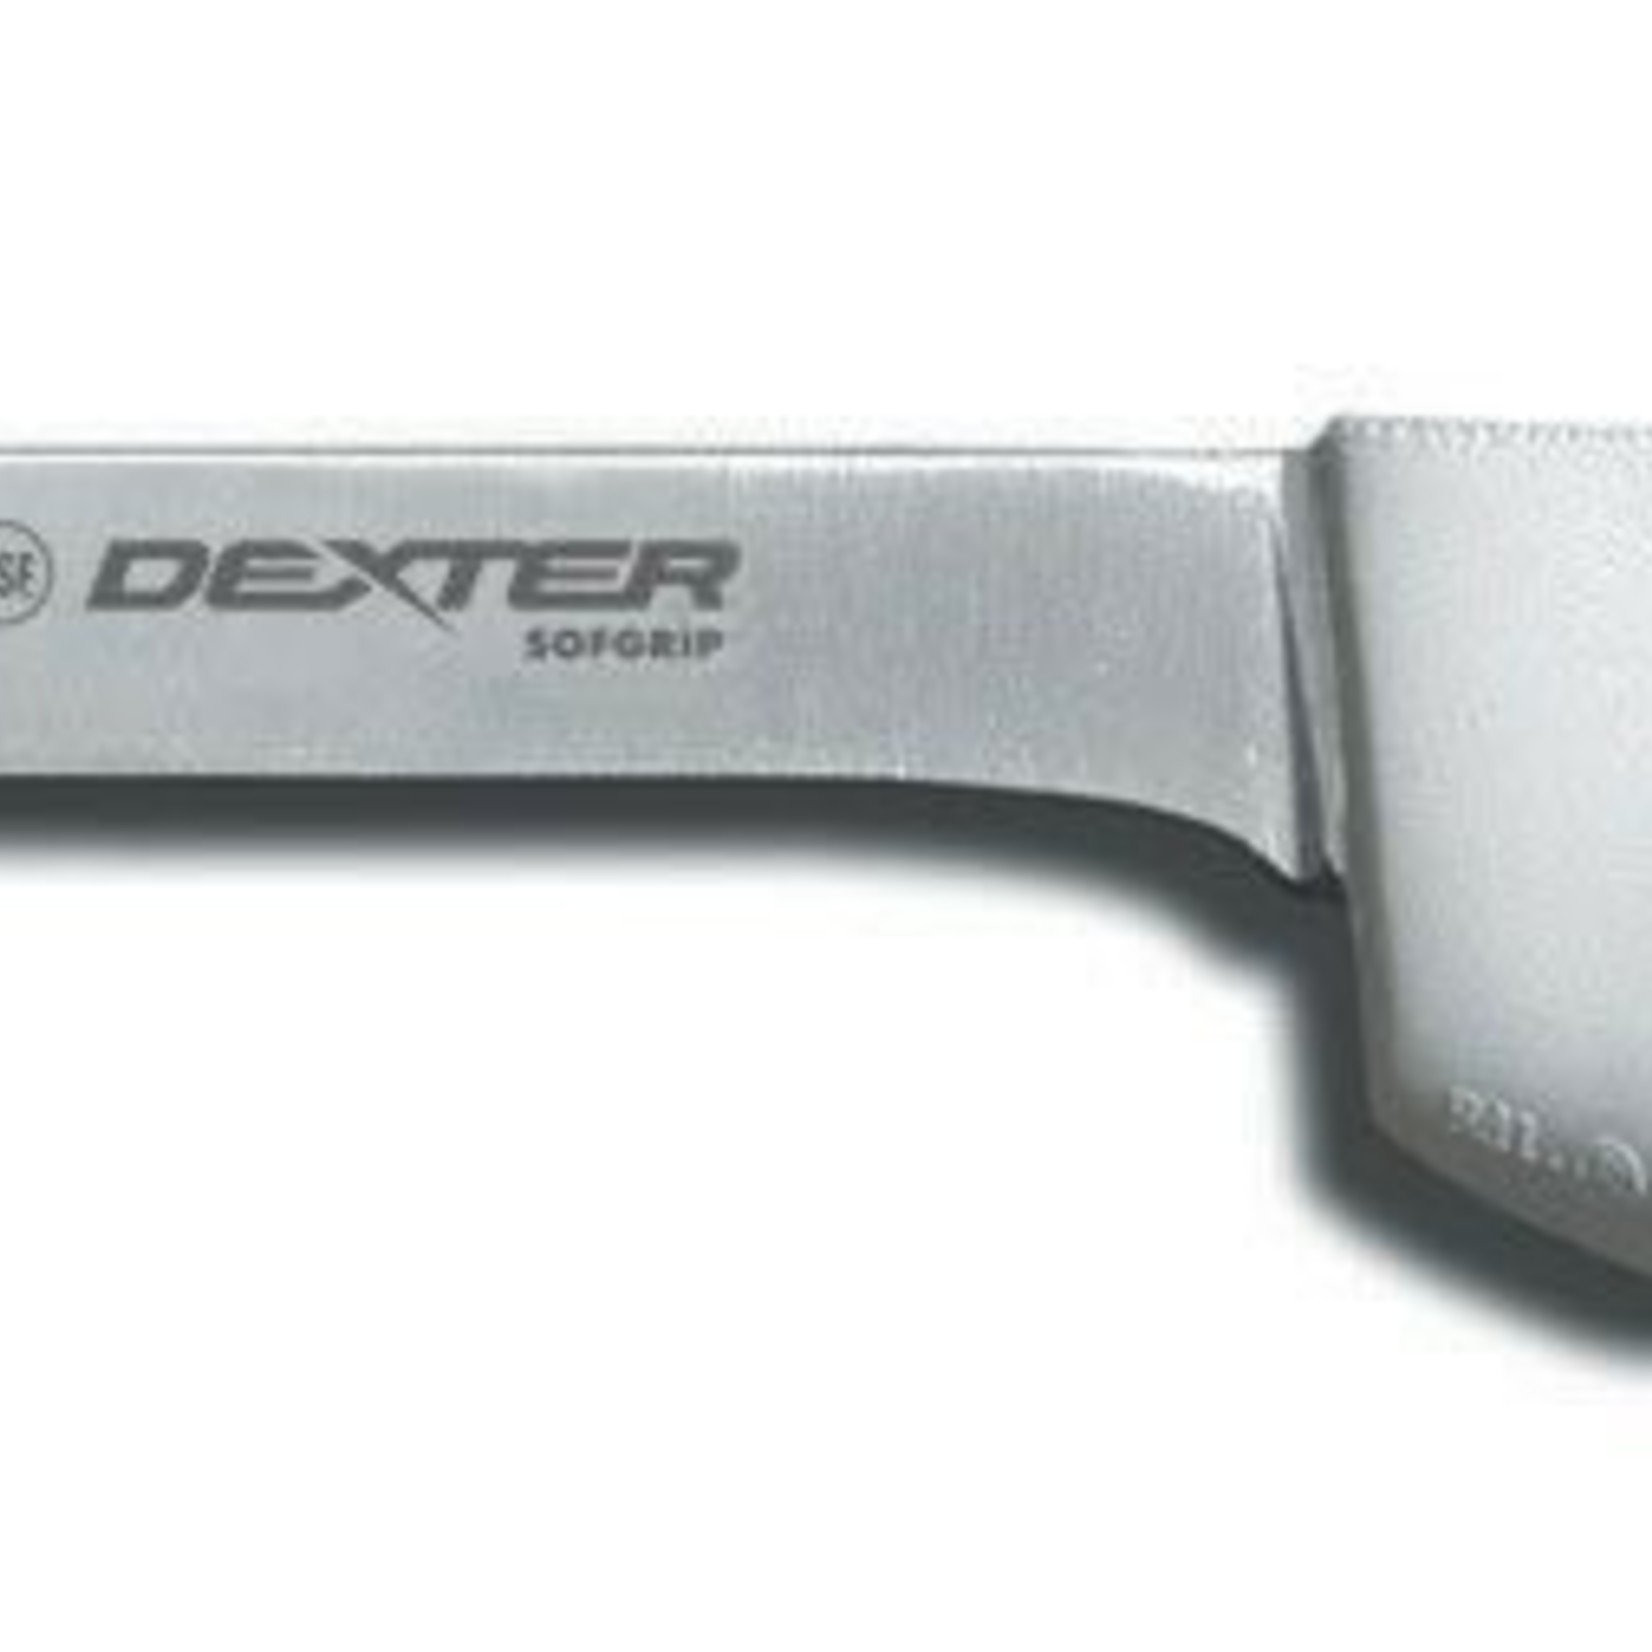 Dexter-Russell Inc Dexter Russell Sofgrip 8" Narrow Fillet Knife